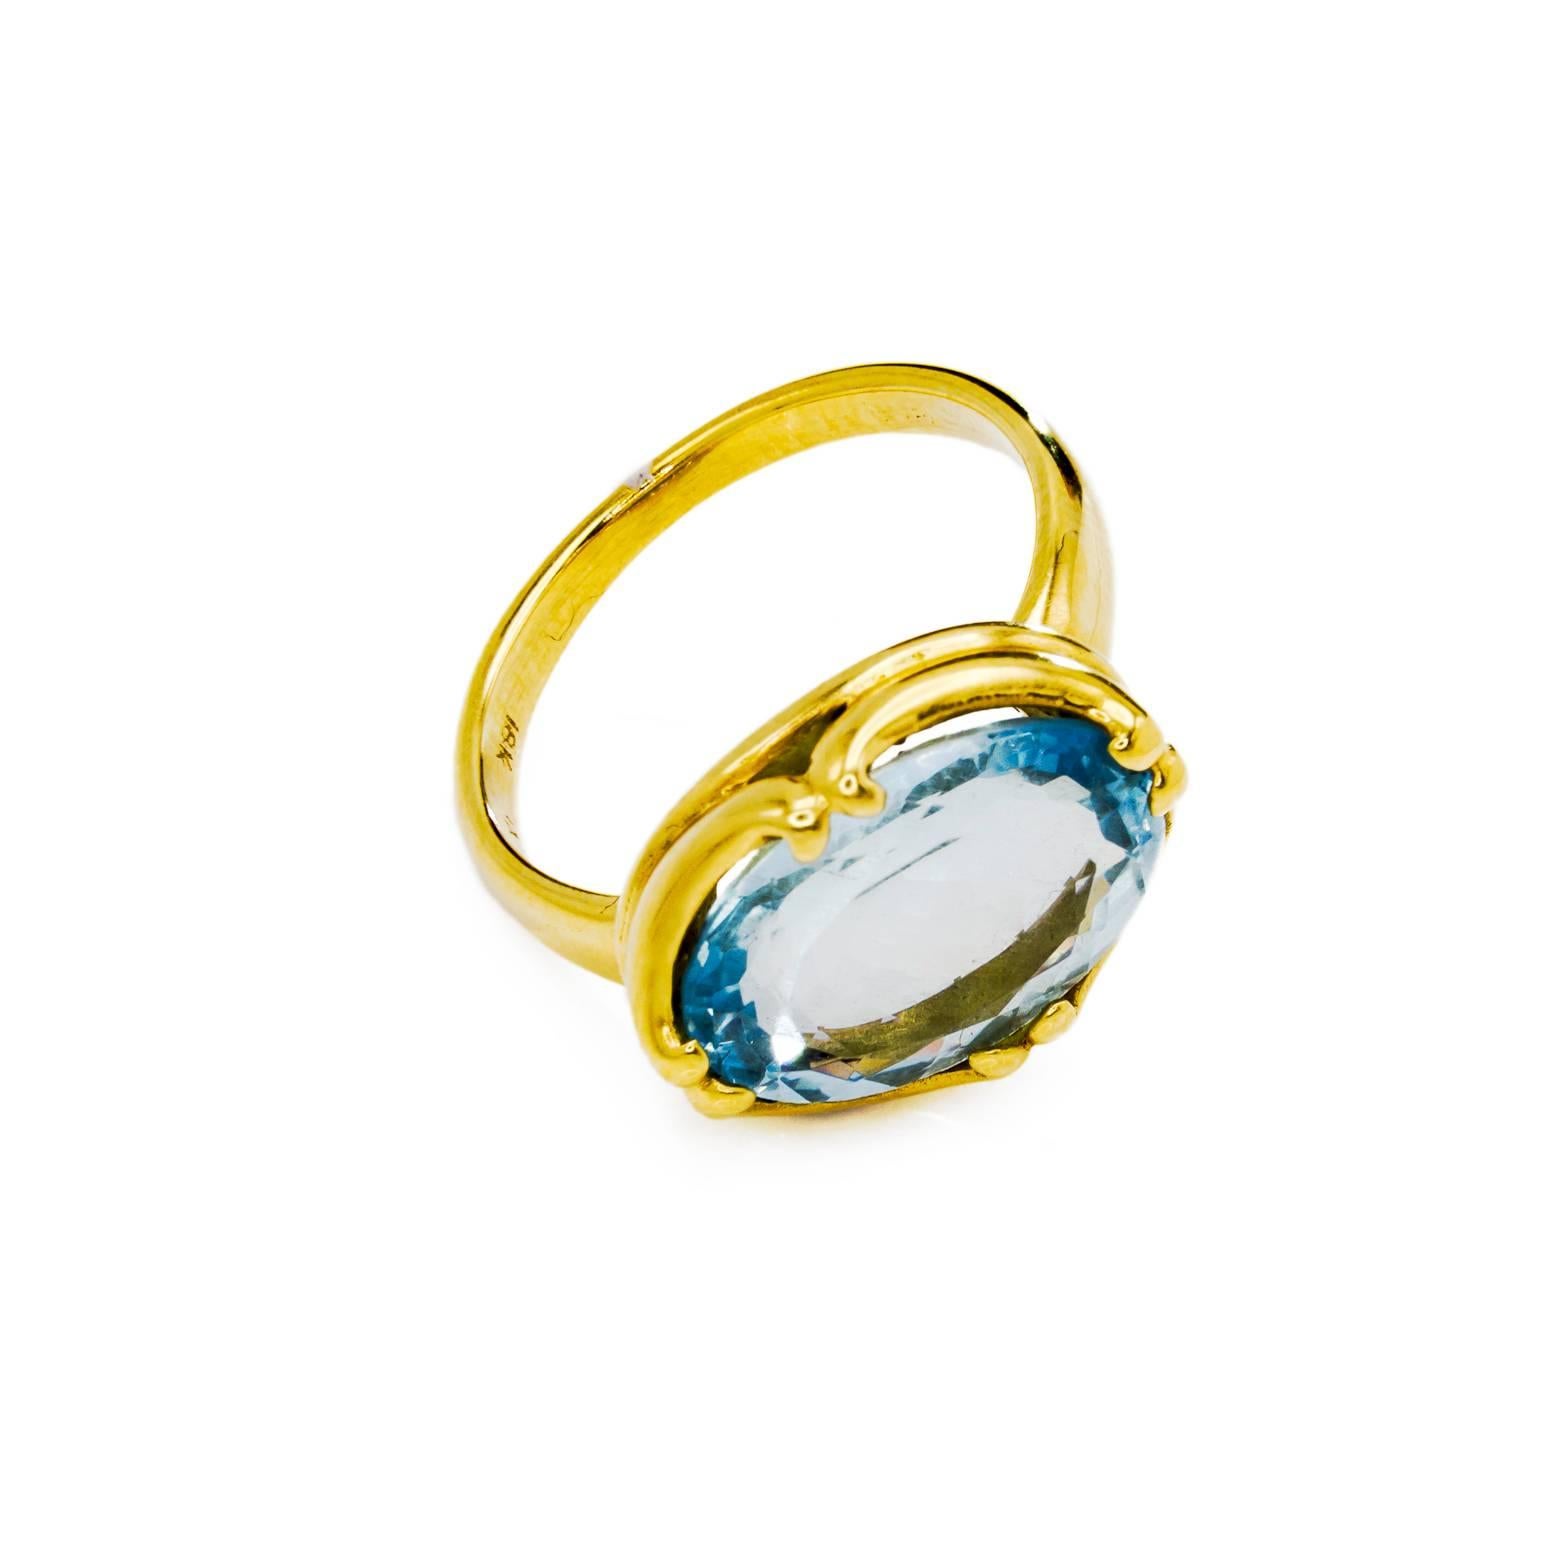 Rose Cut Large Oval Aquamarine Gold Ring Byzantine Style